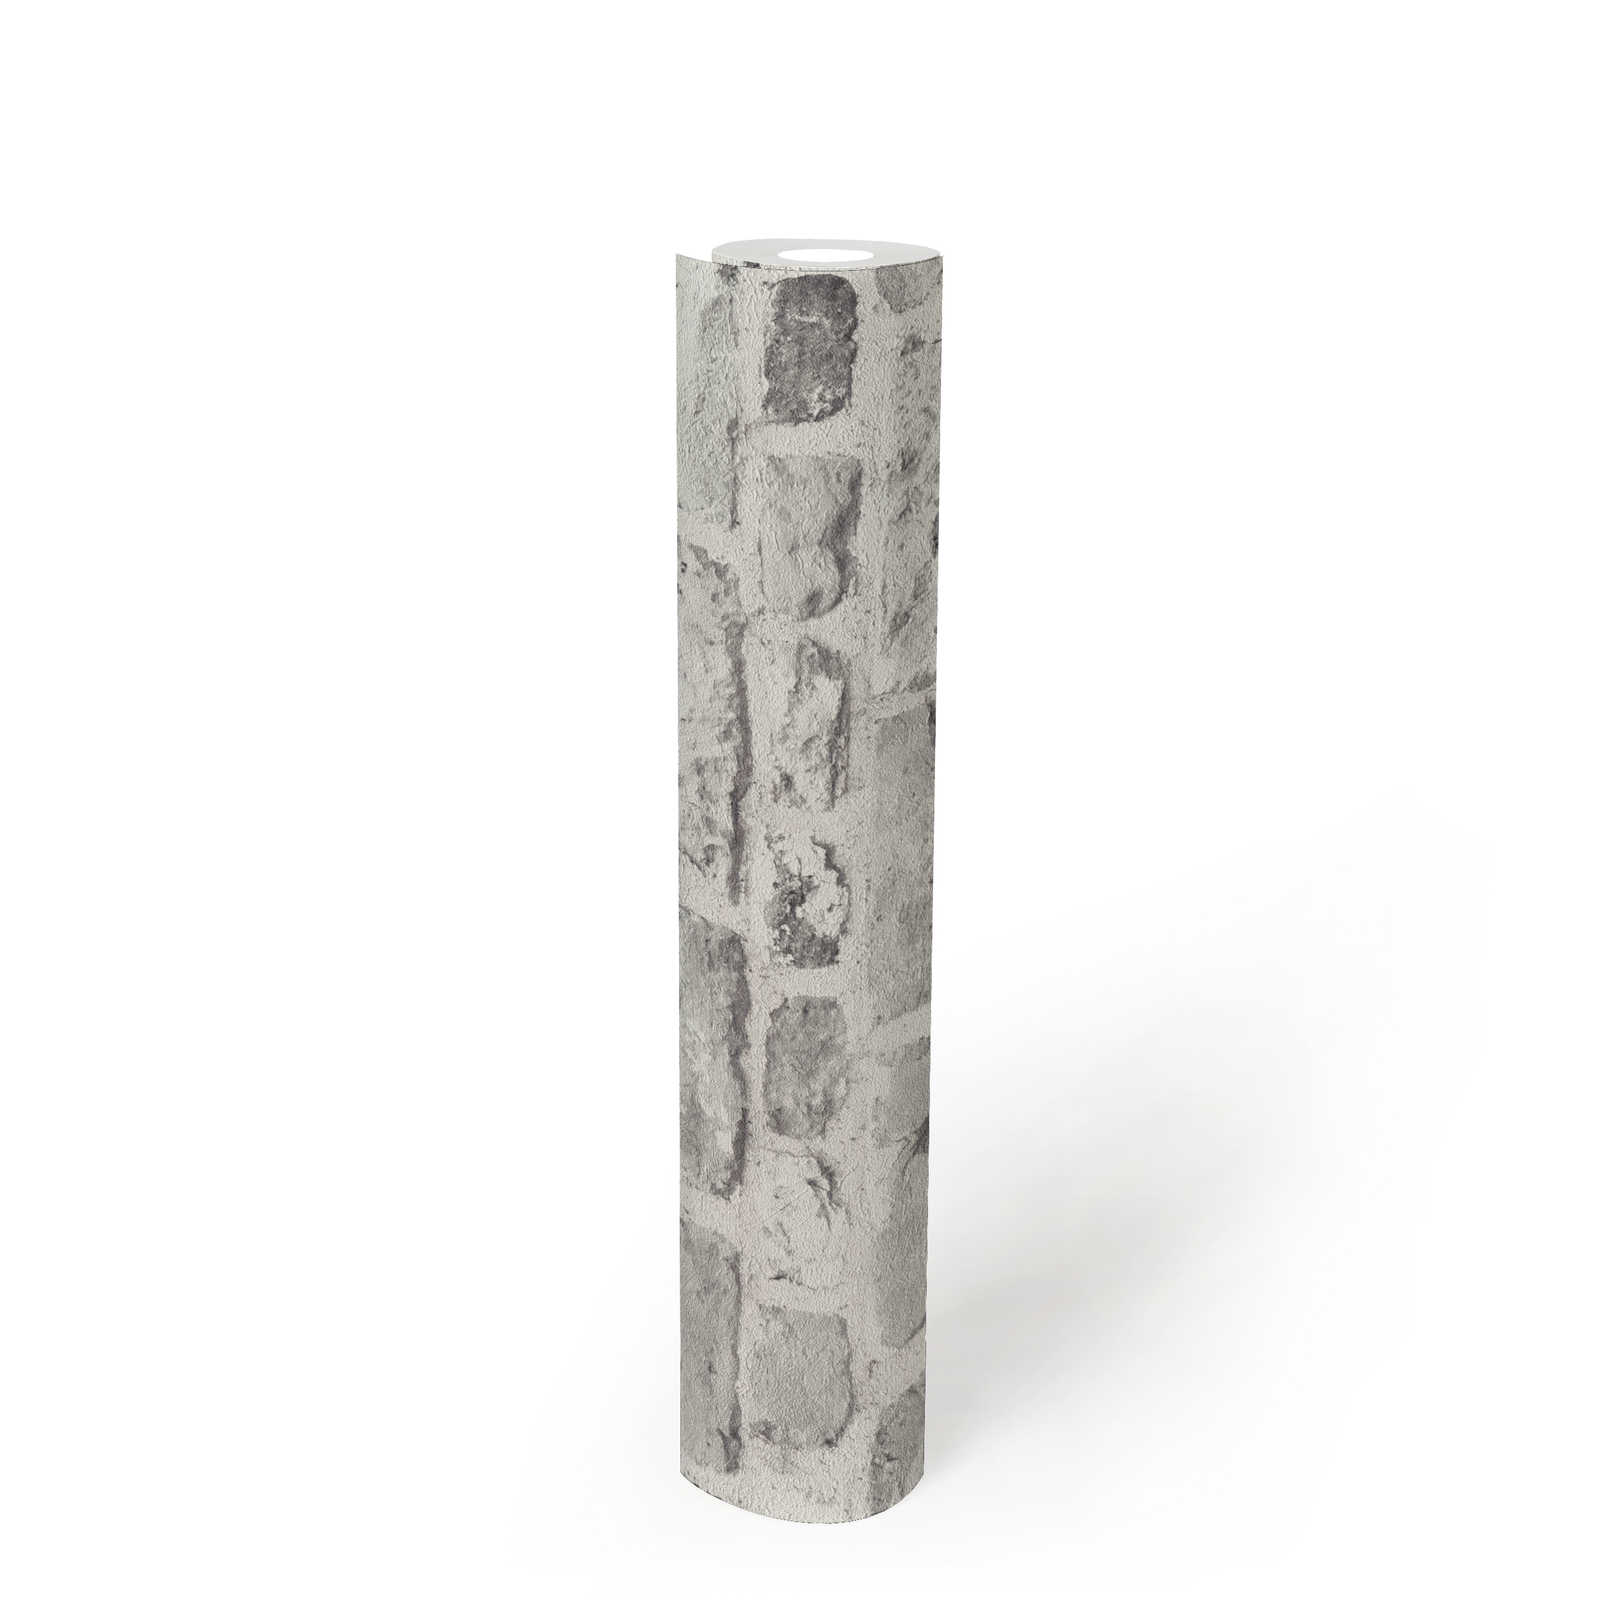             Carta da parati effetto pietra con mattoni 3D - grigio, bianco
        